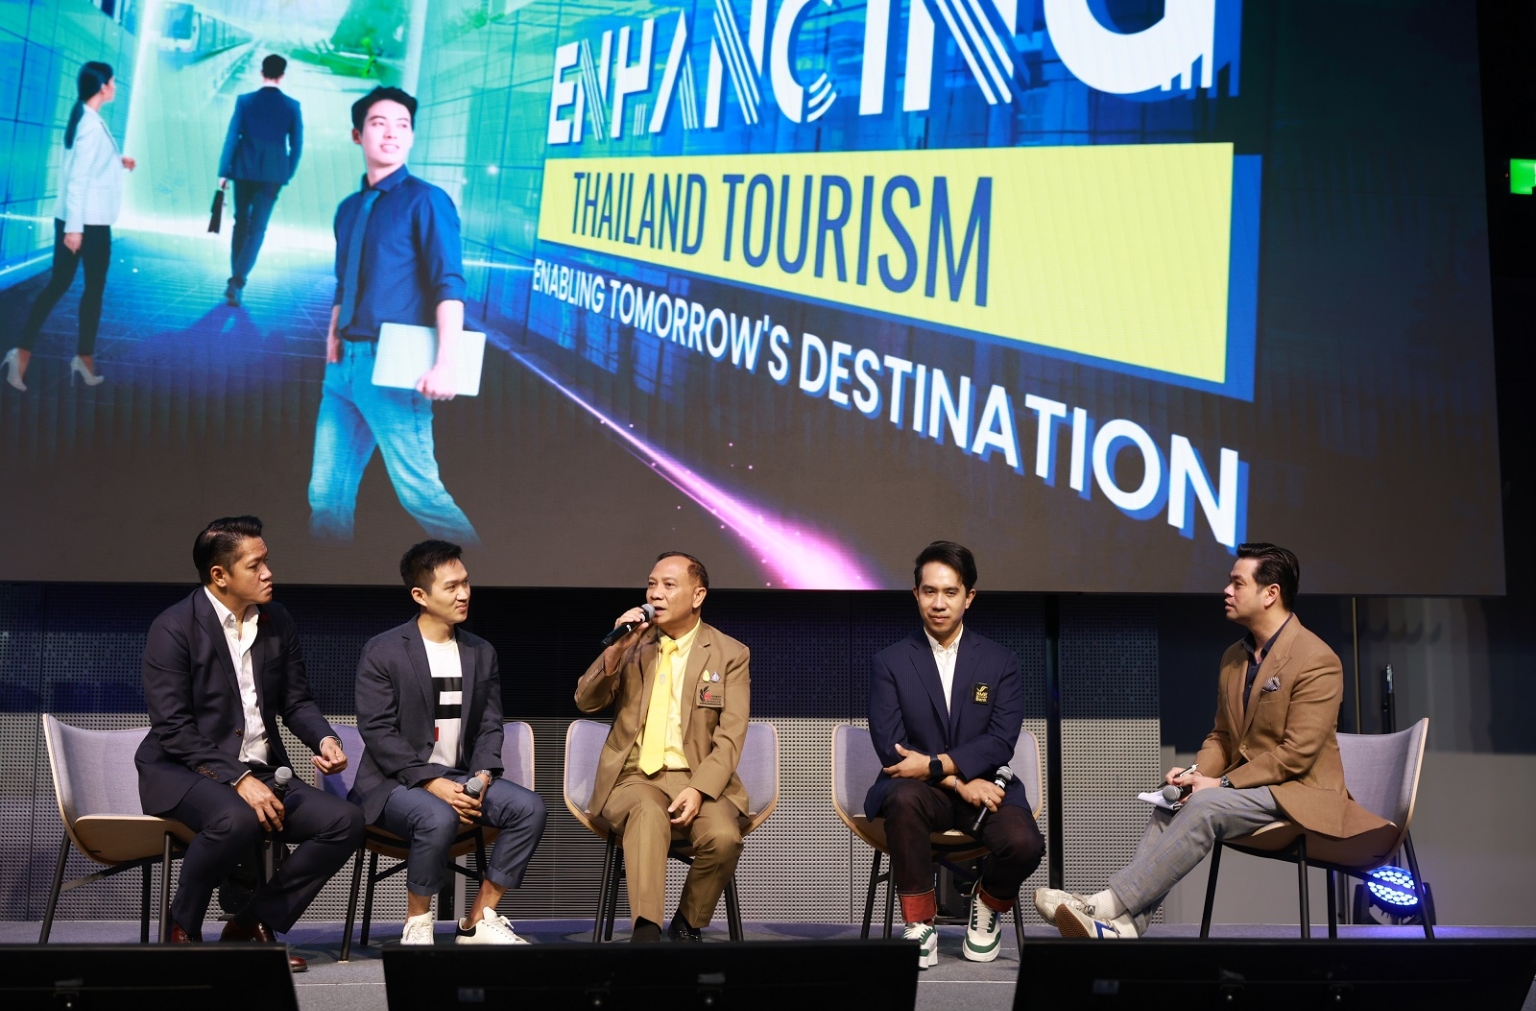 เออาร์ไอพี เผยผลการจัดงาน “Enhancing Thailand Tourism 2023” งานอีเว้นท์เพื่อขับเคลื่อนธุรกิจท่องเที่ยวสู่ยุคดิจิทัล